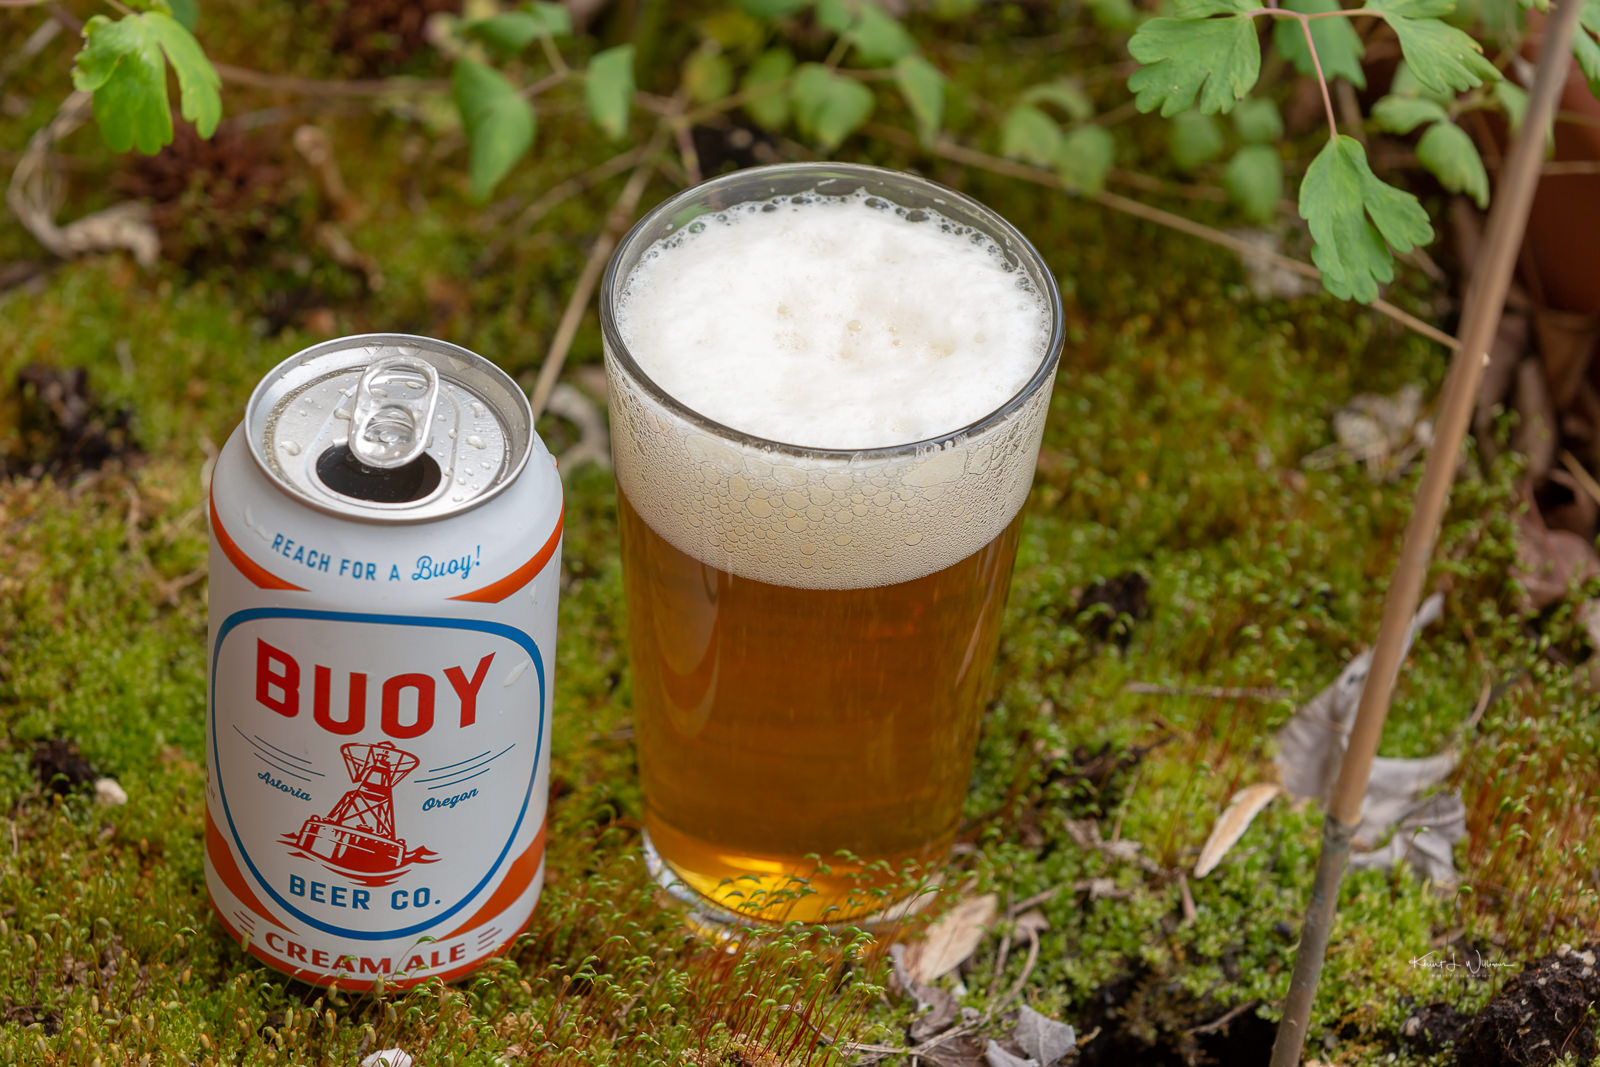 Buoy Beer Company's Cream Ale